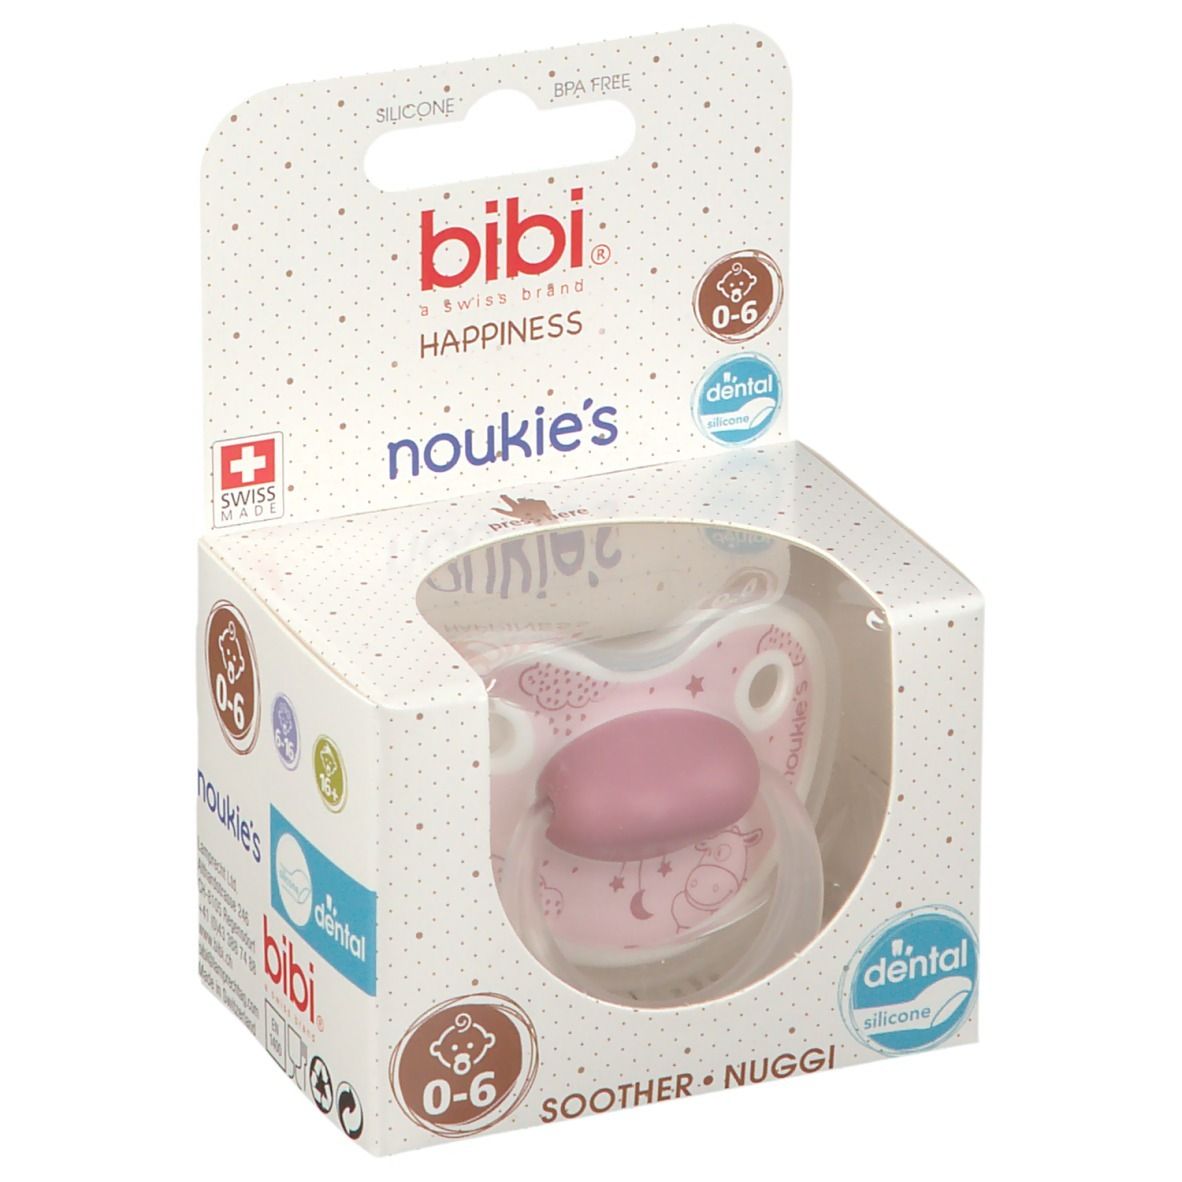 bibi® Happiness Sucette Dental noukie's 0 - 6 mois (Couleur non sélectionnable)